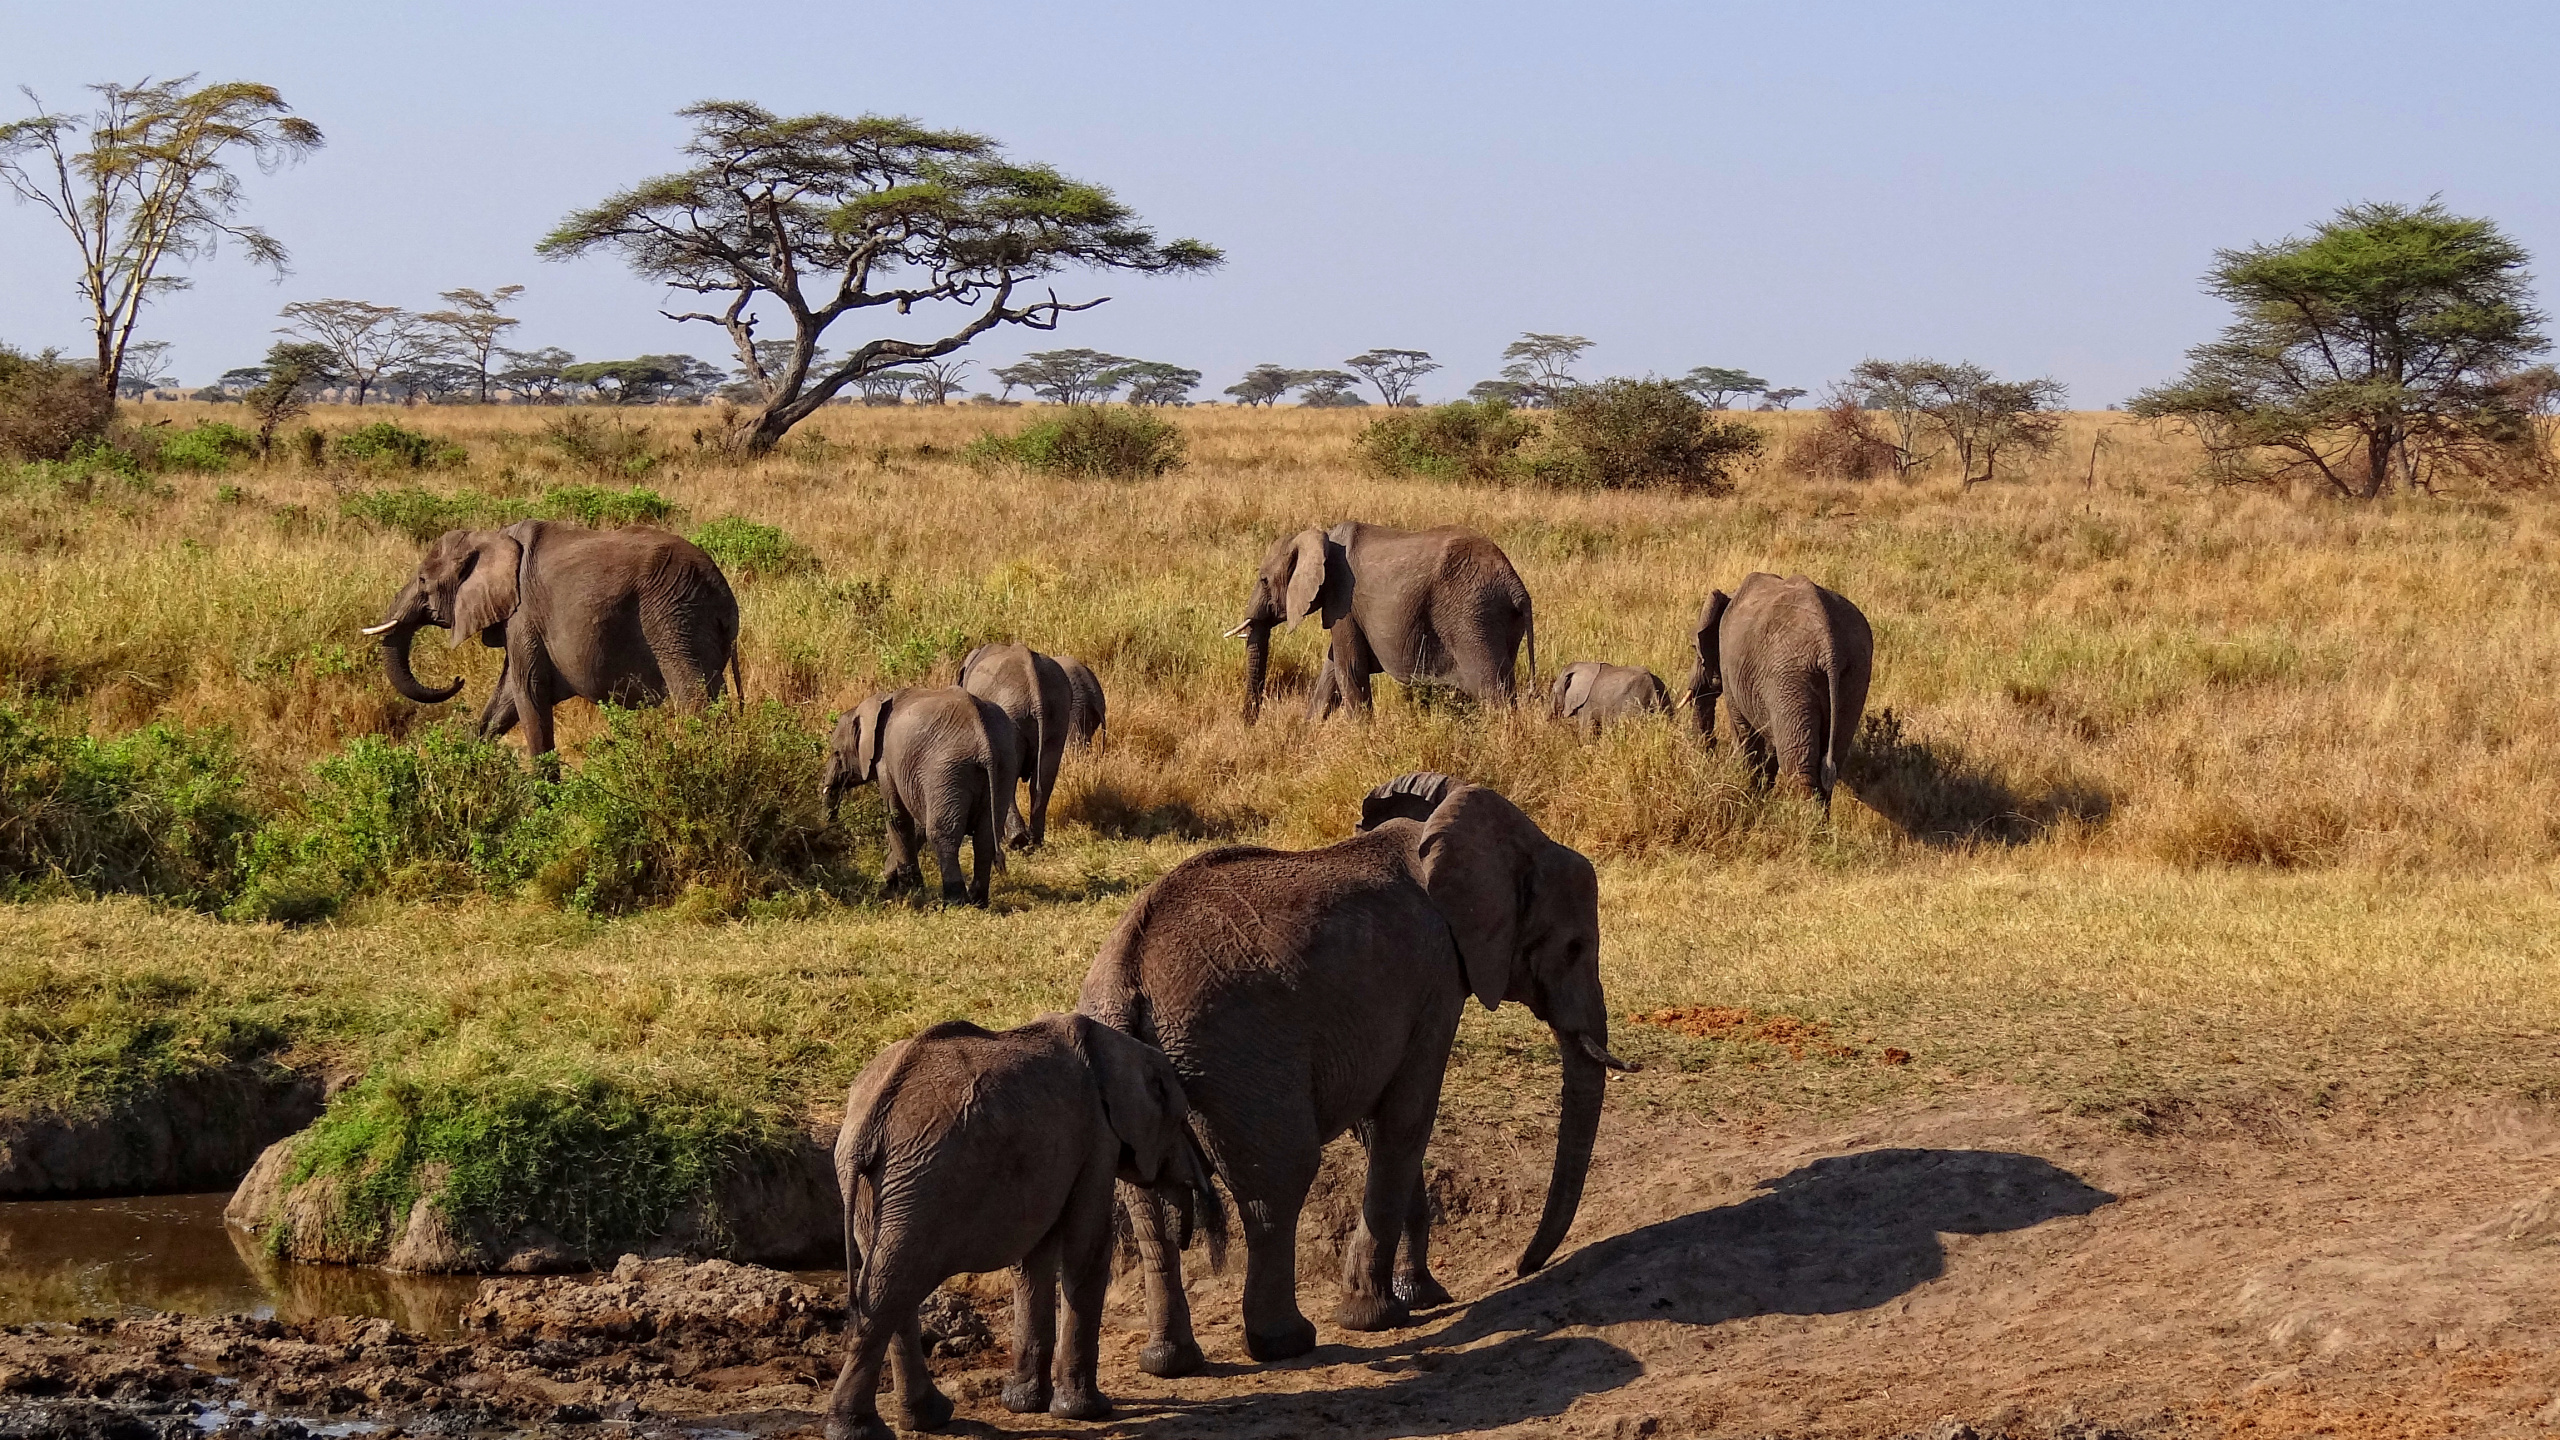 塞伦盖蒂国家公园, Safari, 公园, 野生动物, 陆地动物 壁纸 2560x1440 允许